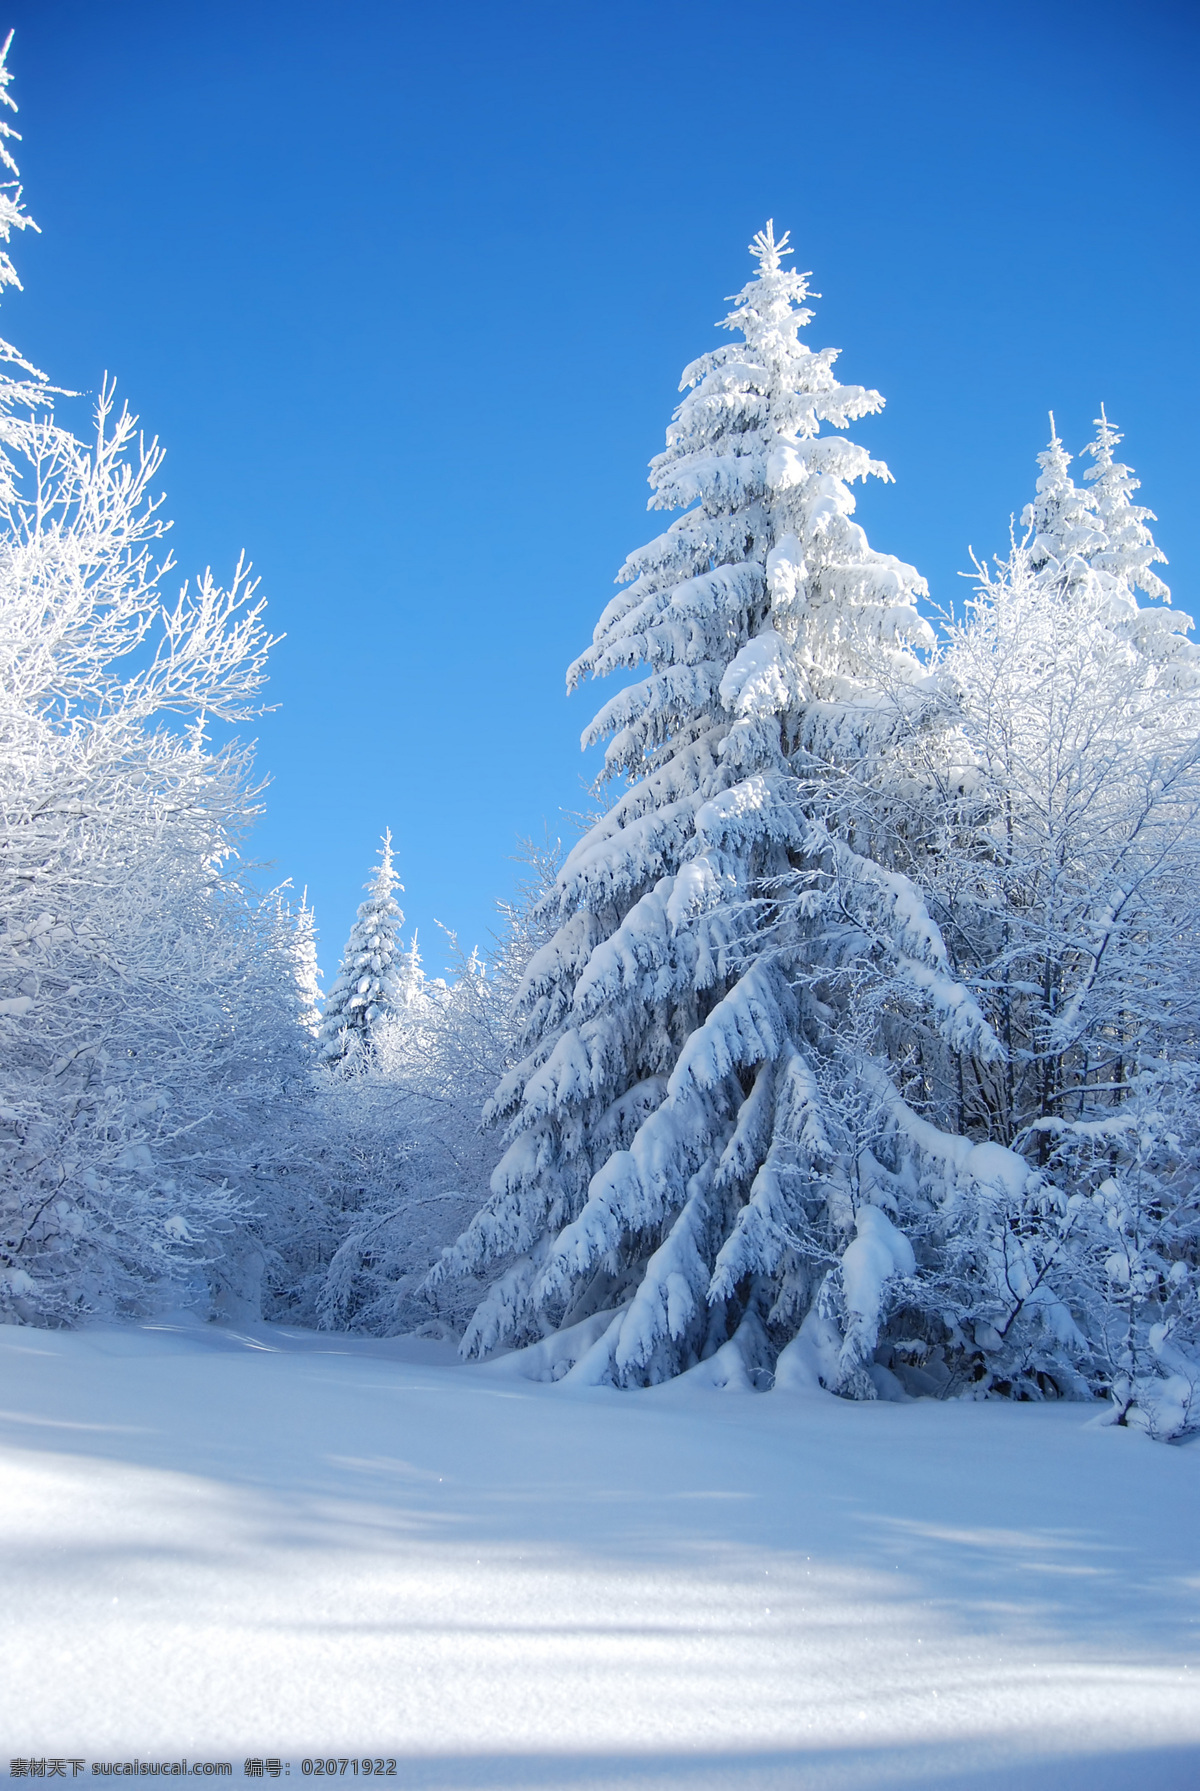 冬季雪景 树林 树木 雪地 冬天雪景 树枝 雪景 冬季风景 冬天风景 自然风光 自然景观 自然风景